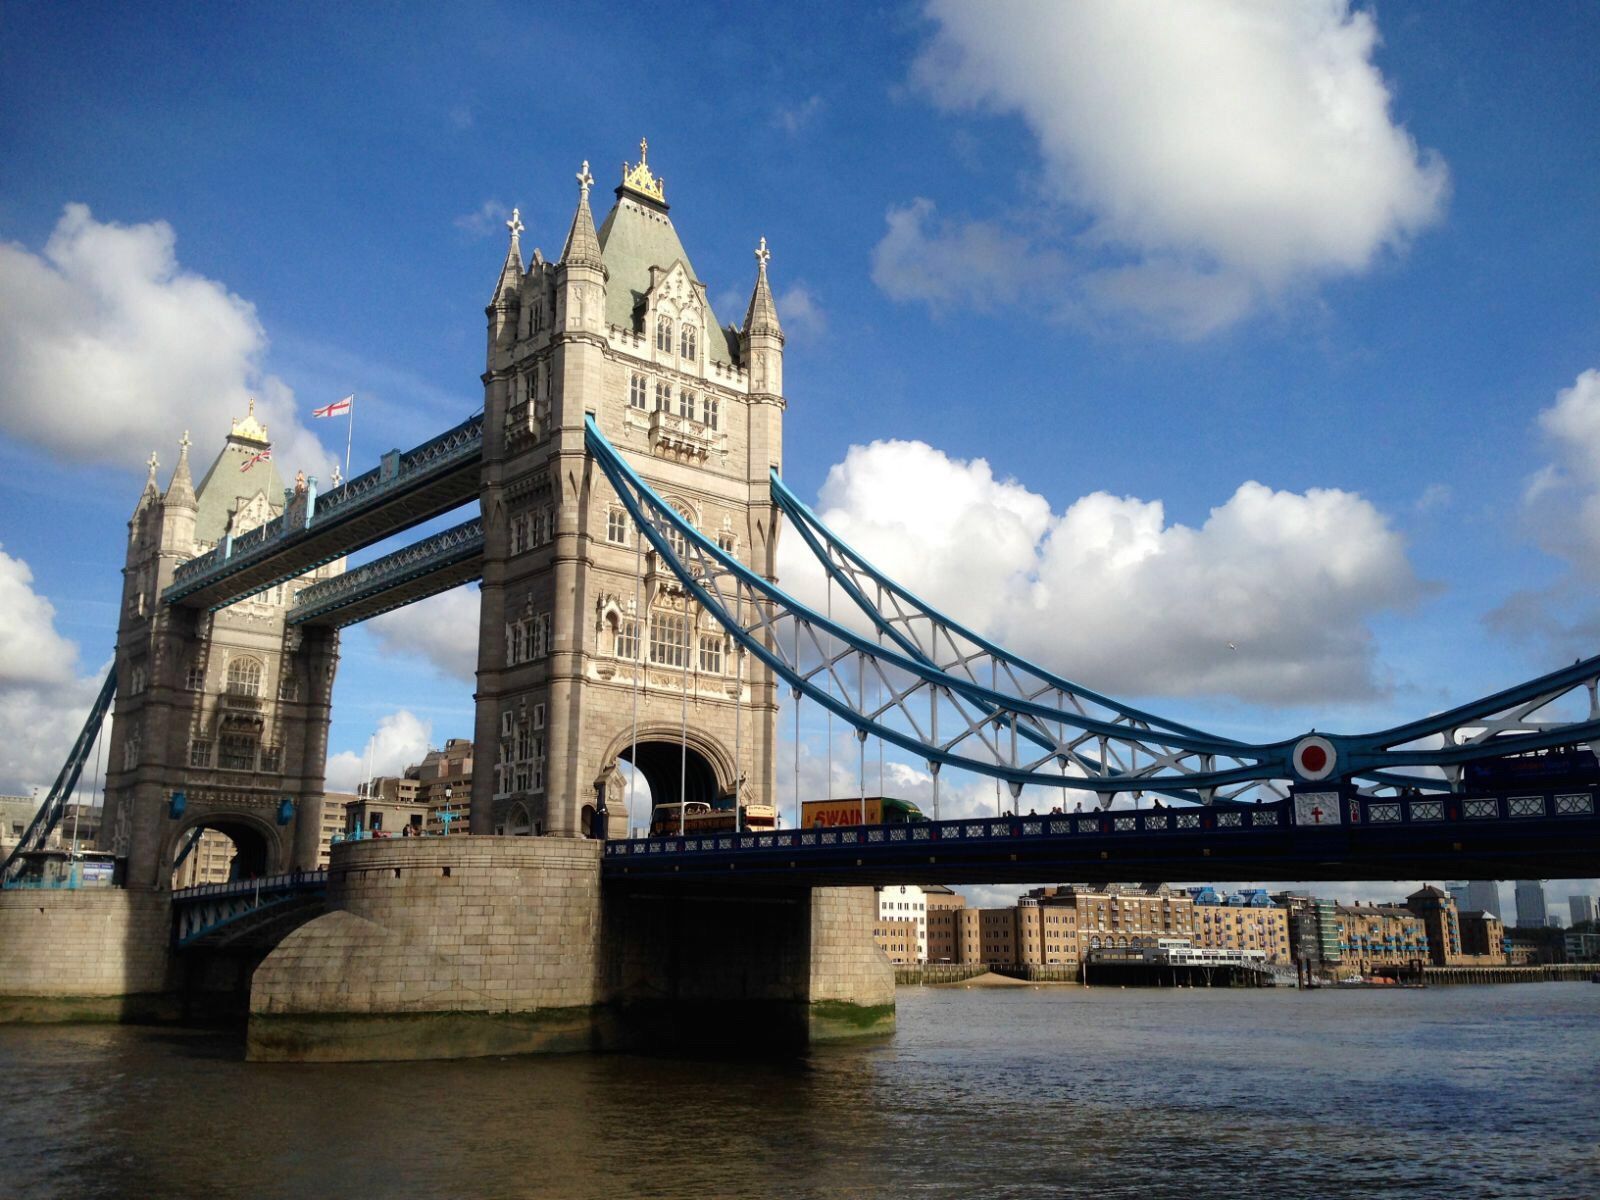 盘点伦敦泰晤士河上的那些桥-优越留学